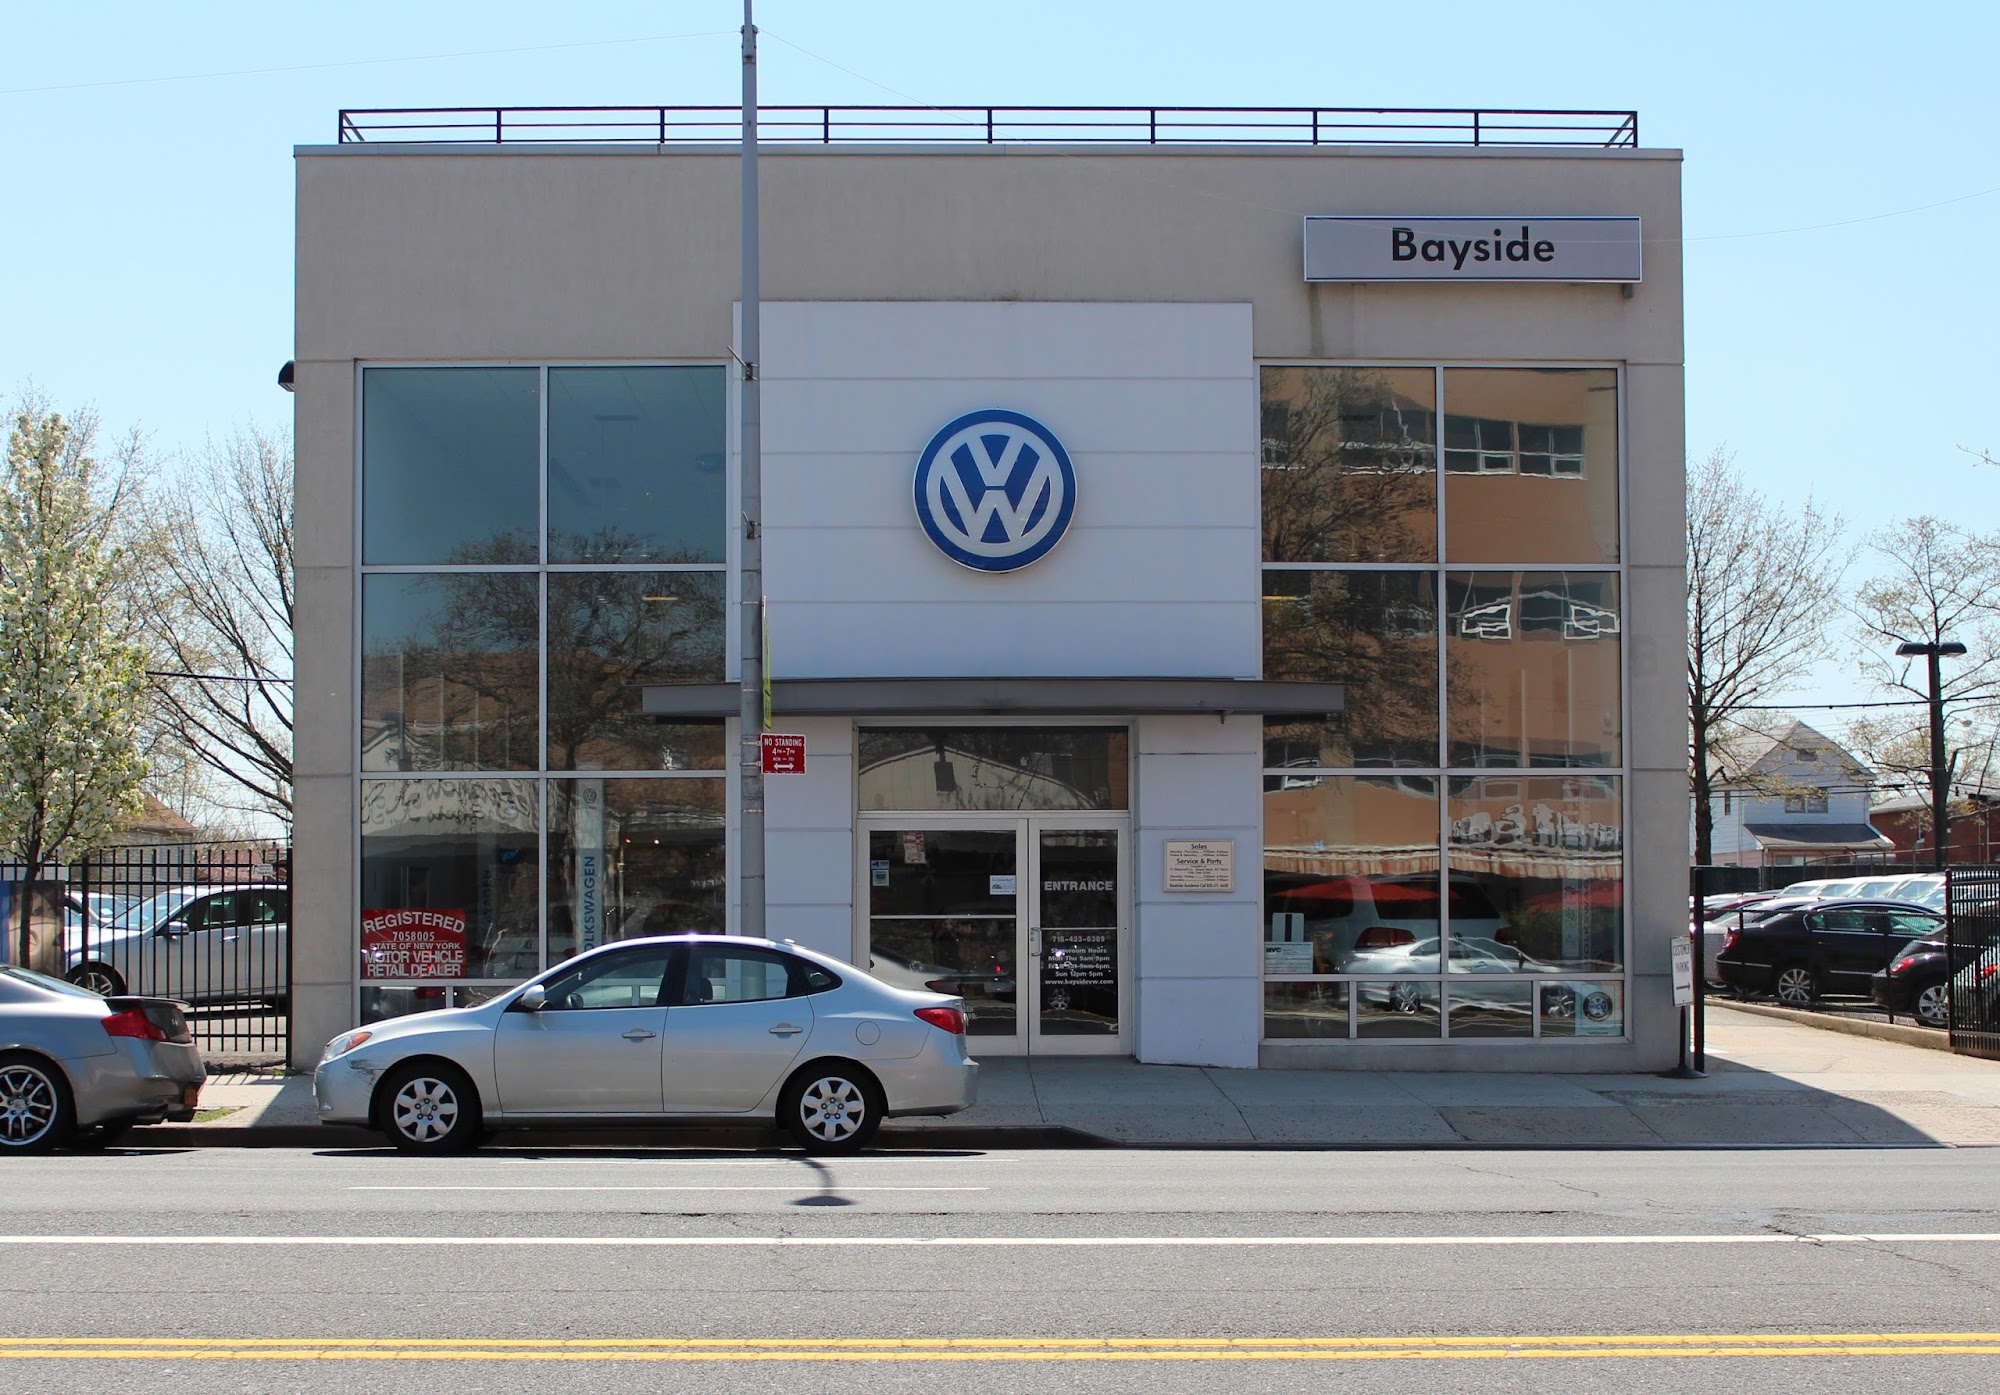 Bayside Volkswagen